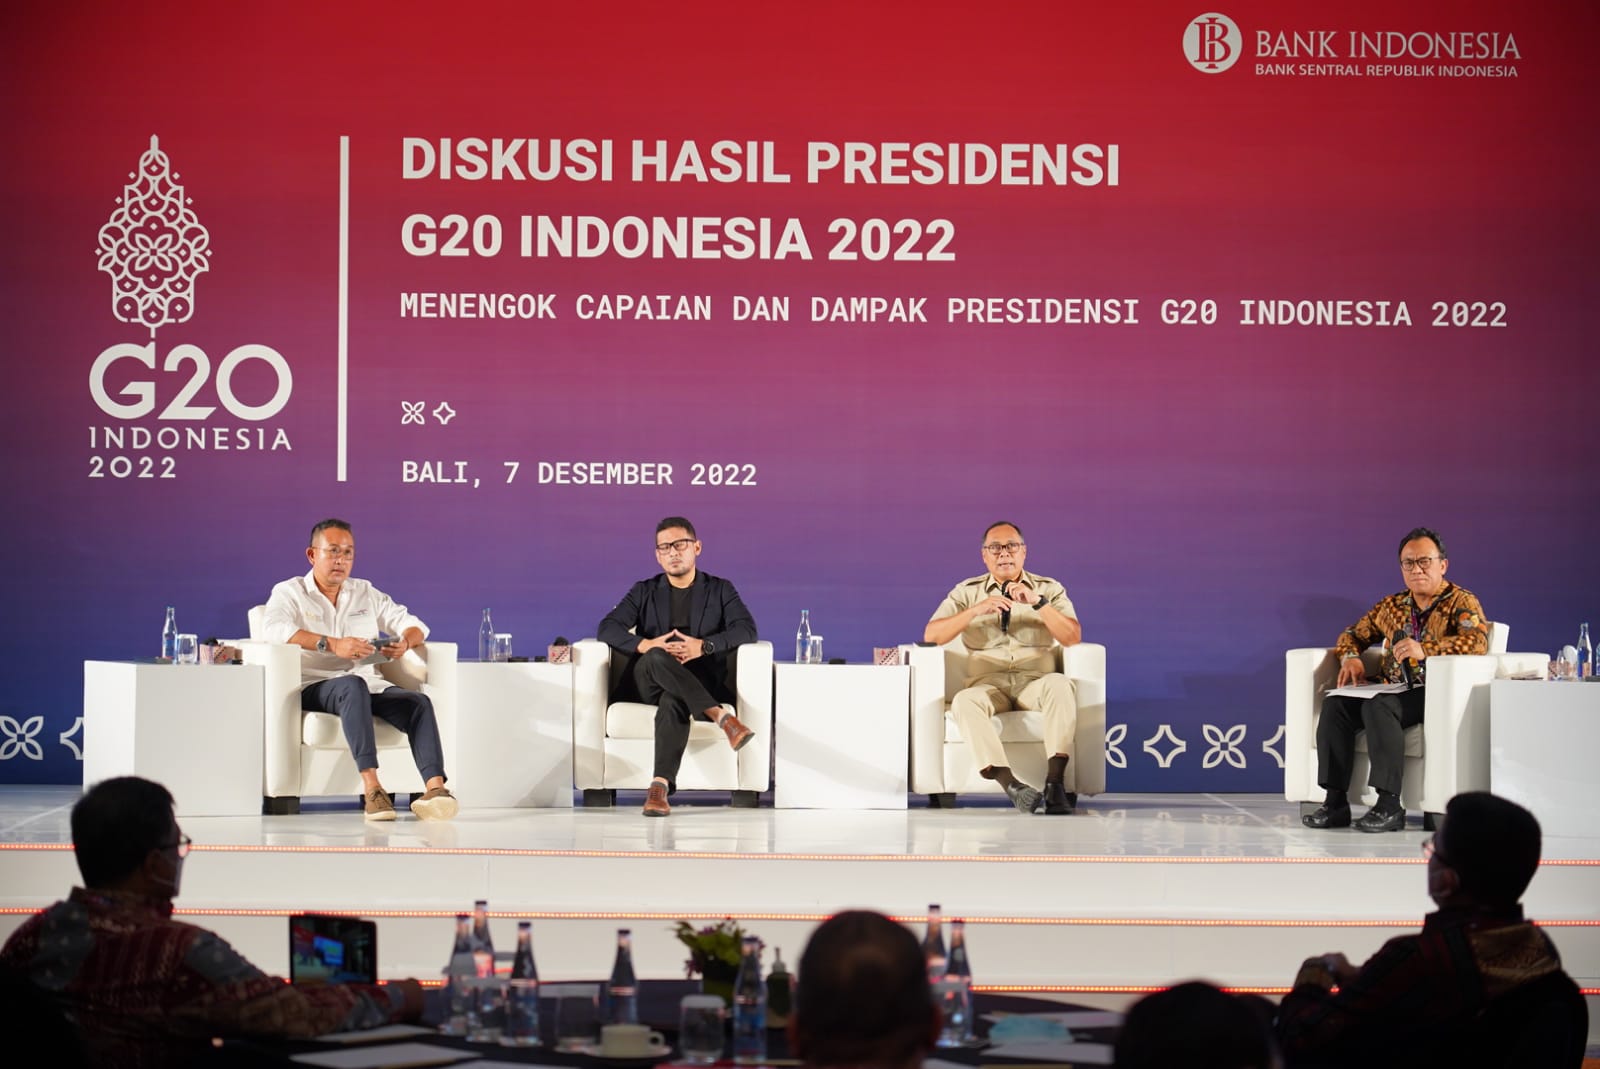 Permintaan Gas Elpiji Bakal Berkurang, Penggunaan Listrik Naik, Pesan Penting Diseminasi G20 di Bali Bagian 2